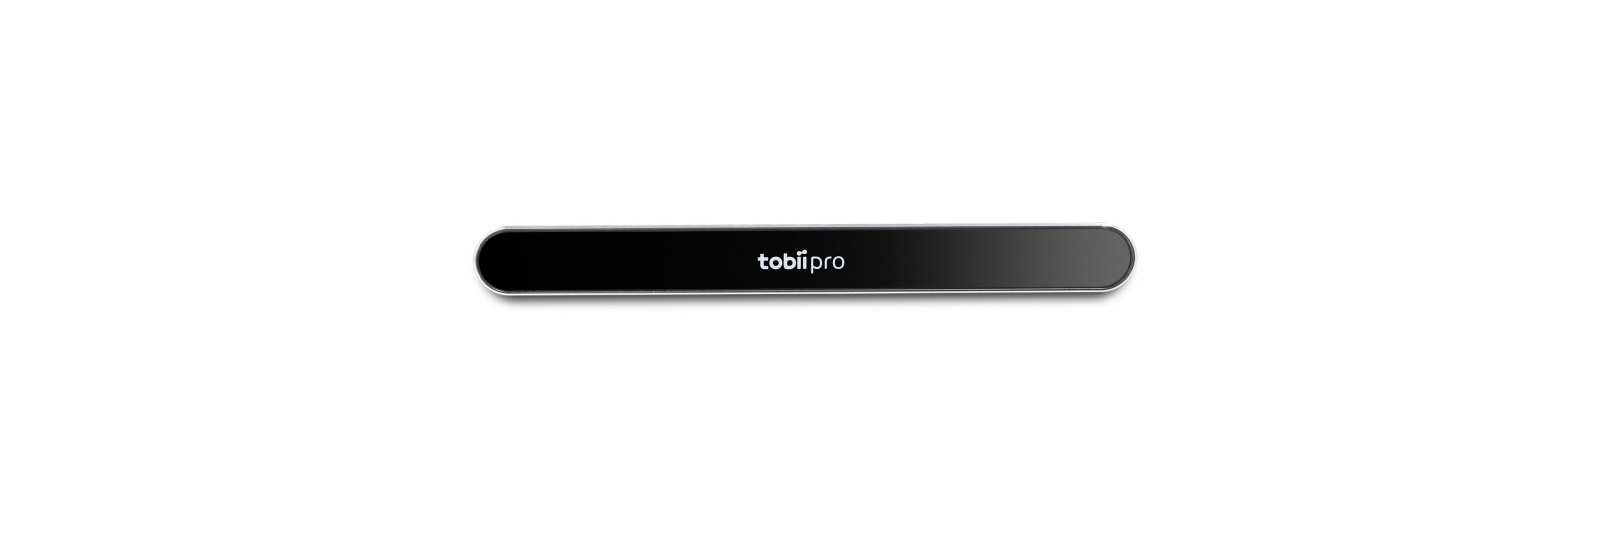 The easiest eye tracker - Tobii Pro Nano